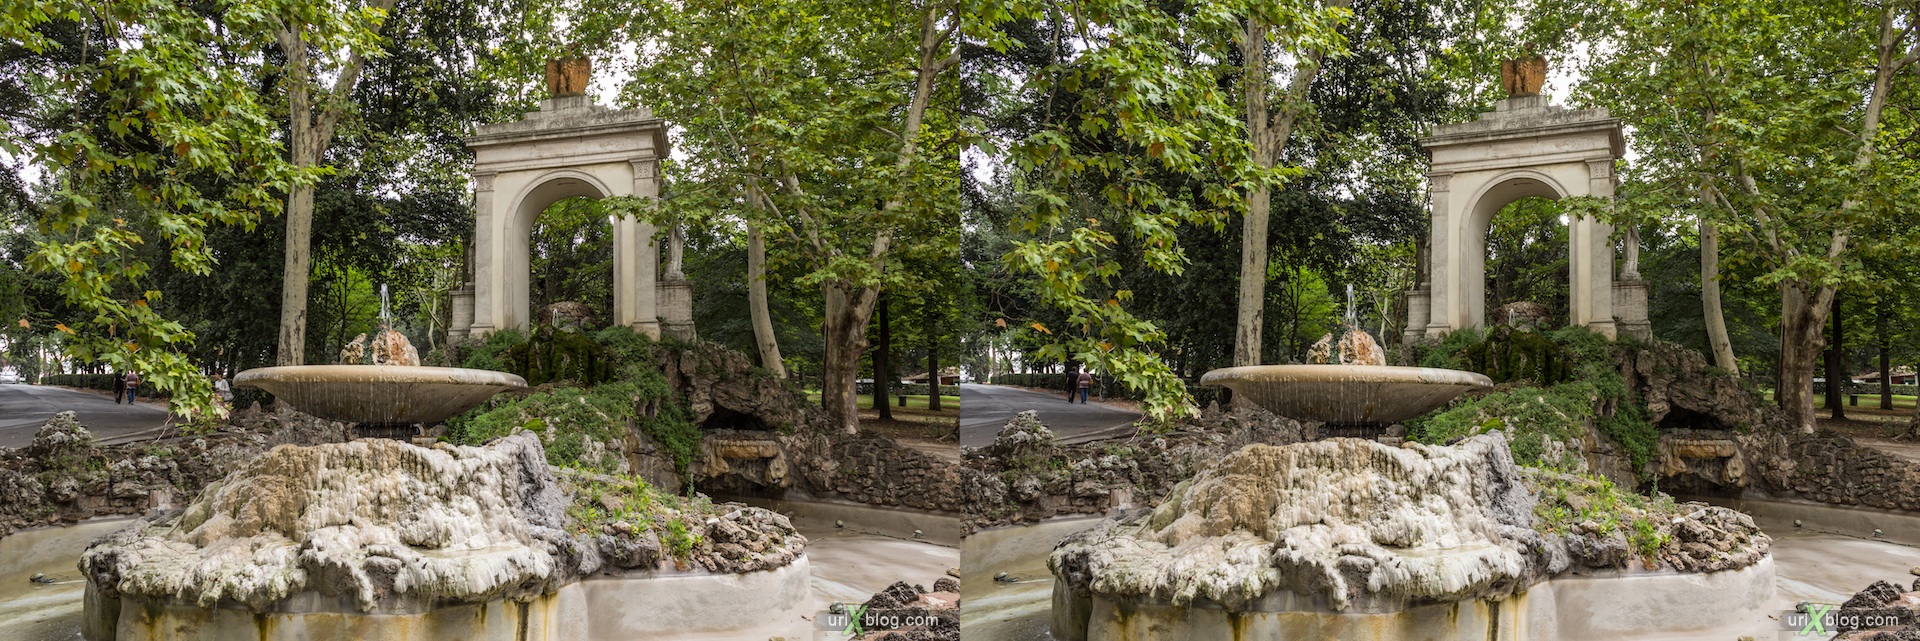 2012, парк вилла Боргезе, фонтан, Рим, Италия, 3D, перекрёстные стереопары, стерео, стереопара, стереопары